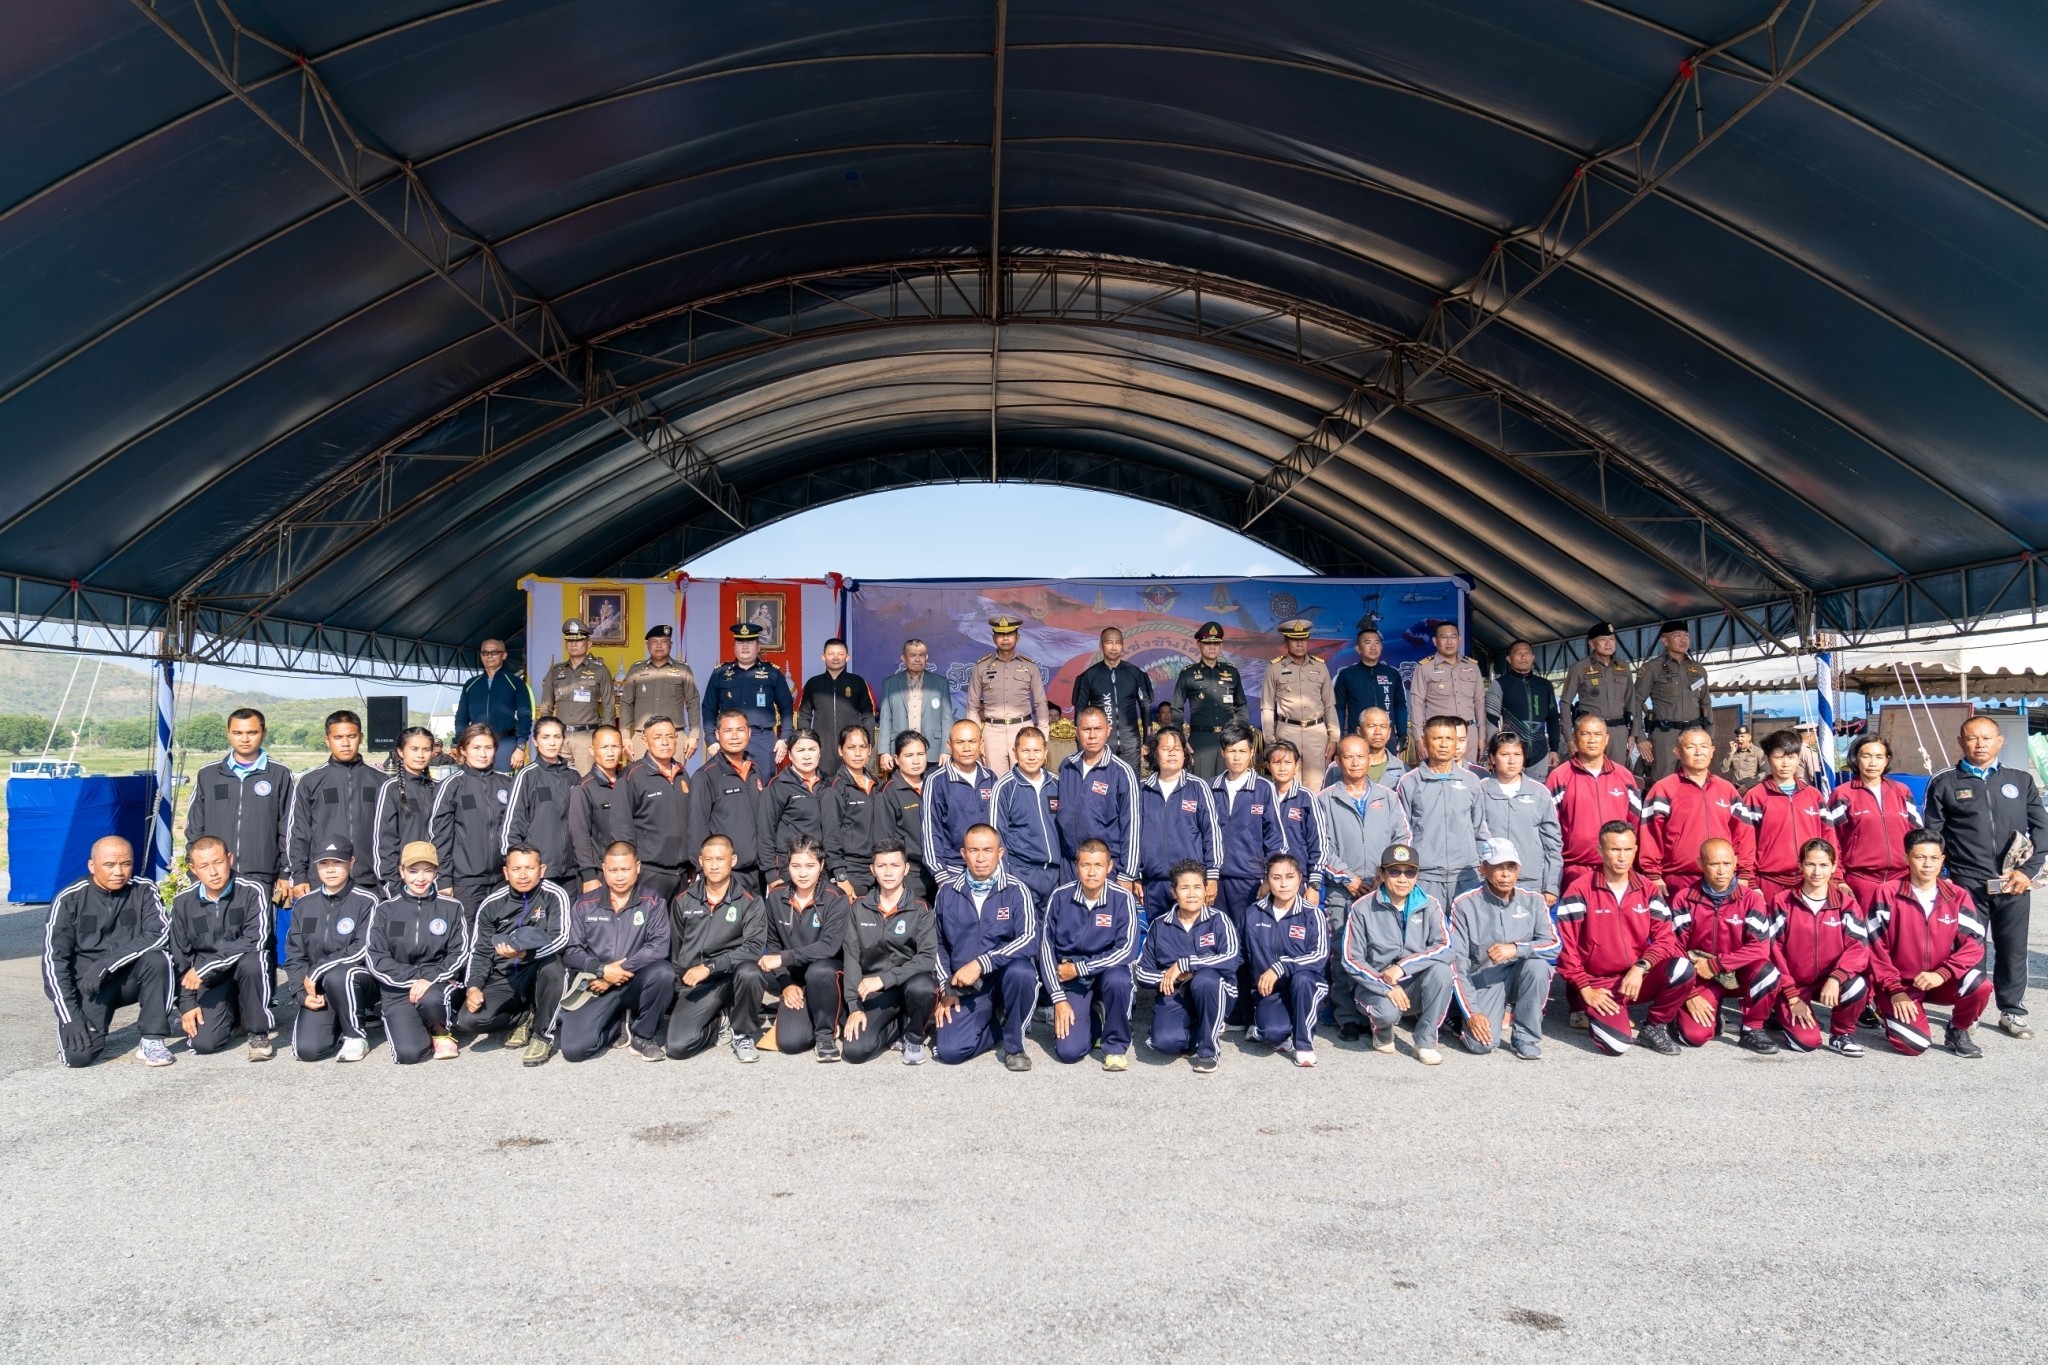 ผู้บัญชาการกองพลนาวิกโยธิน เป็นประธานพิธีเปิดการแข่งขันโดดร่มกีฬากองทัพไทยและสำนักงานตำรวจแห่งชาติ ครั้งที่ ๕๓ ประจำปี ๒๕๖๖